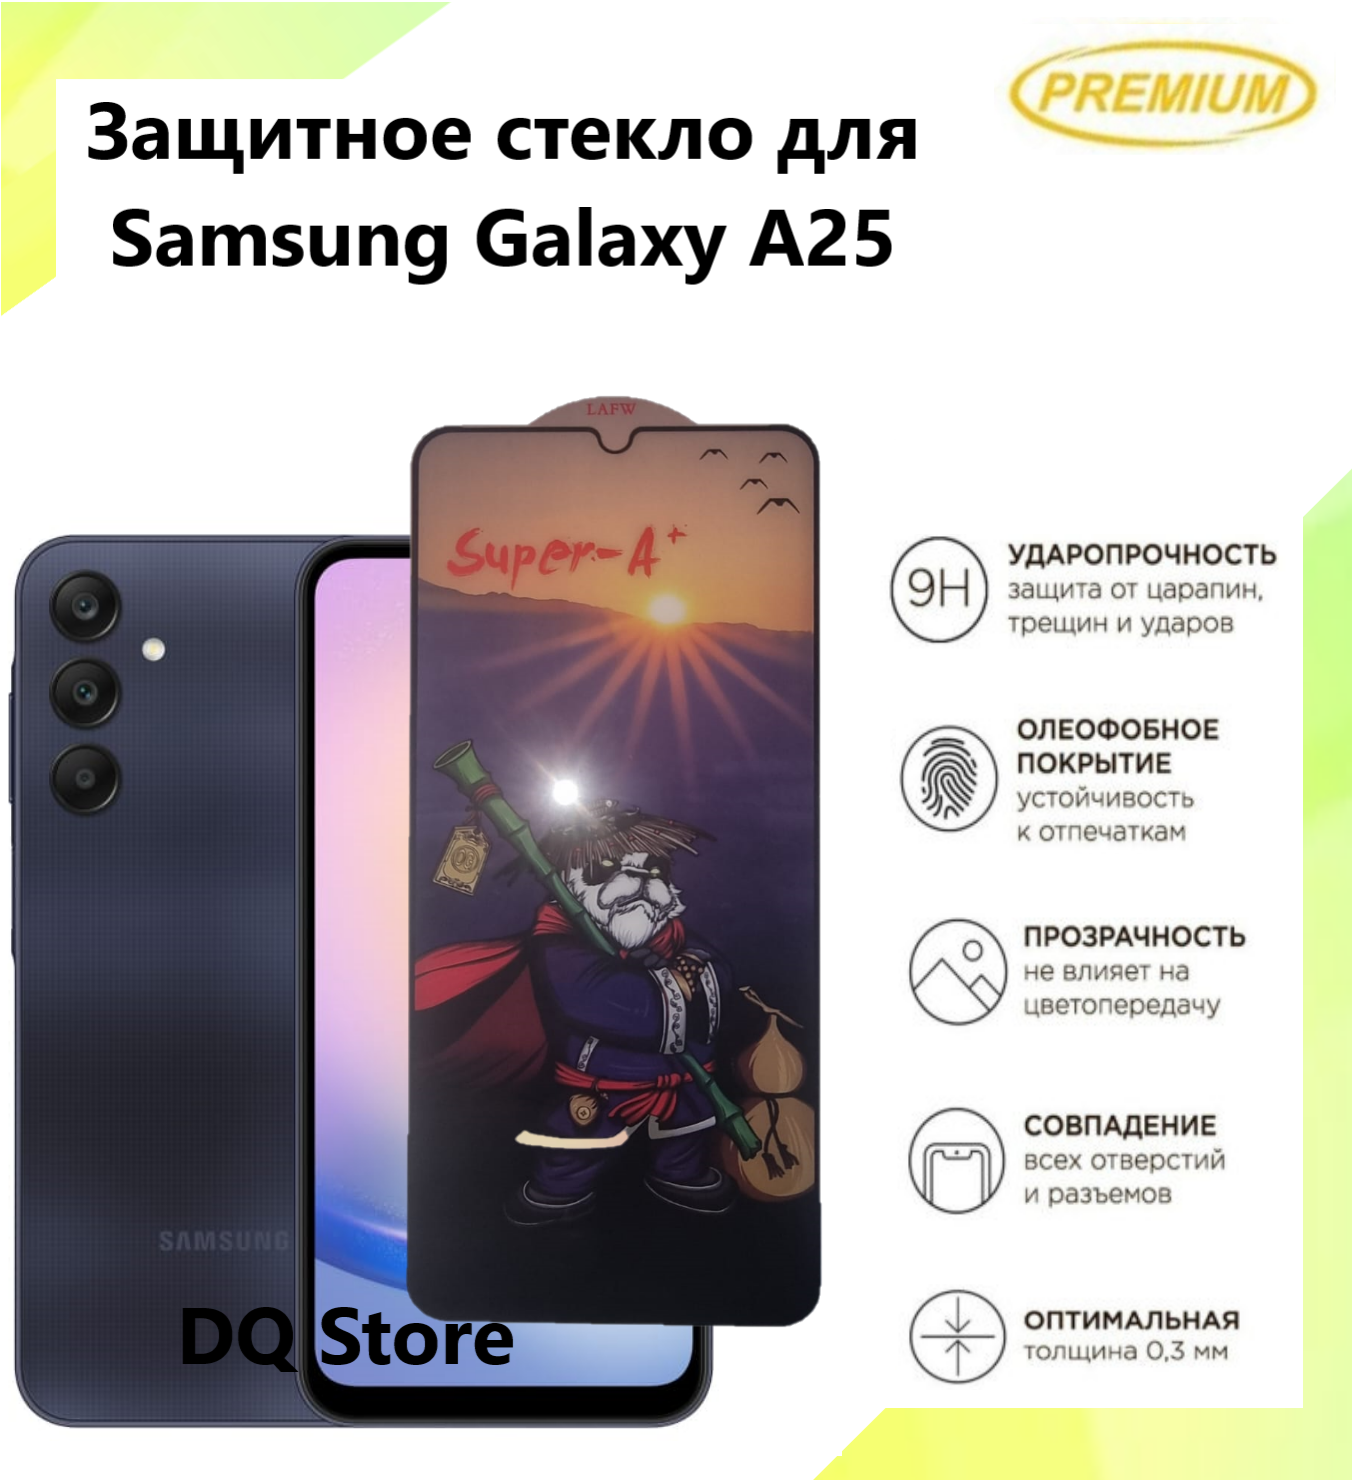 Защитное стекло на Samsung Galaxy A25 / Галакси А25 . Полноэкранное защитное стекло с олеофобным покрытием Premium